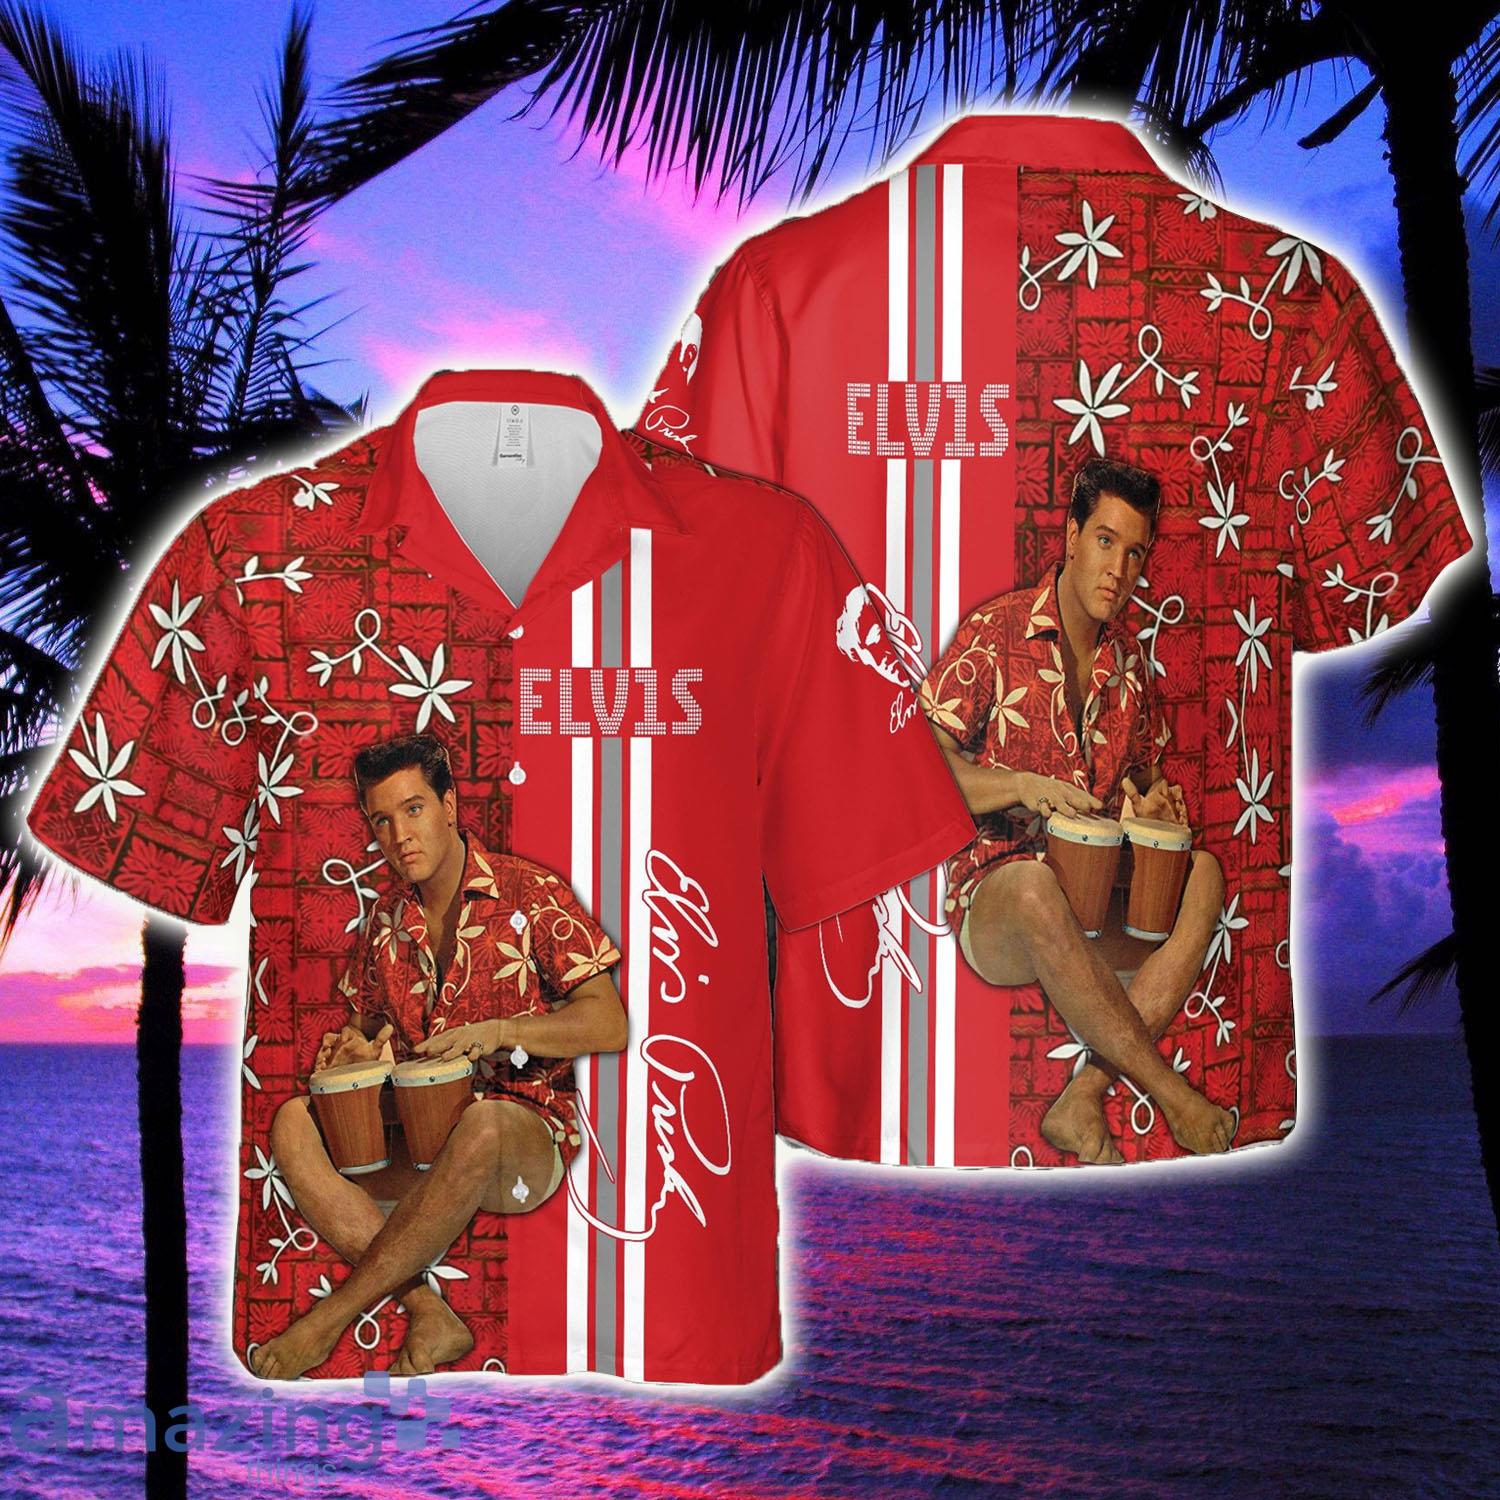 Elvis Presley The King Elvis Presley Hawaii Shirt - Elvis Presley The King Elvis Presley Hawaii Shirt